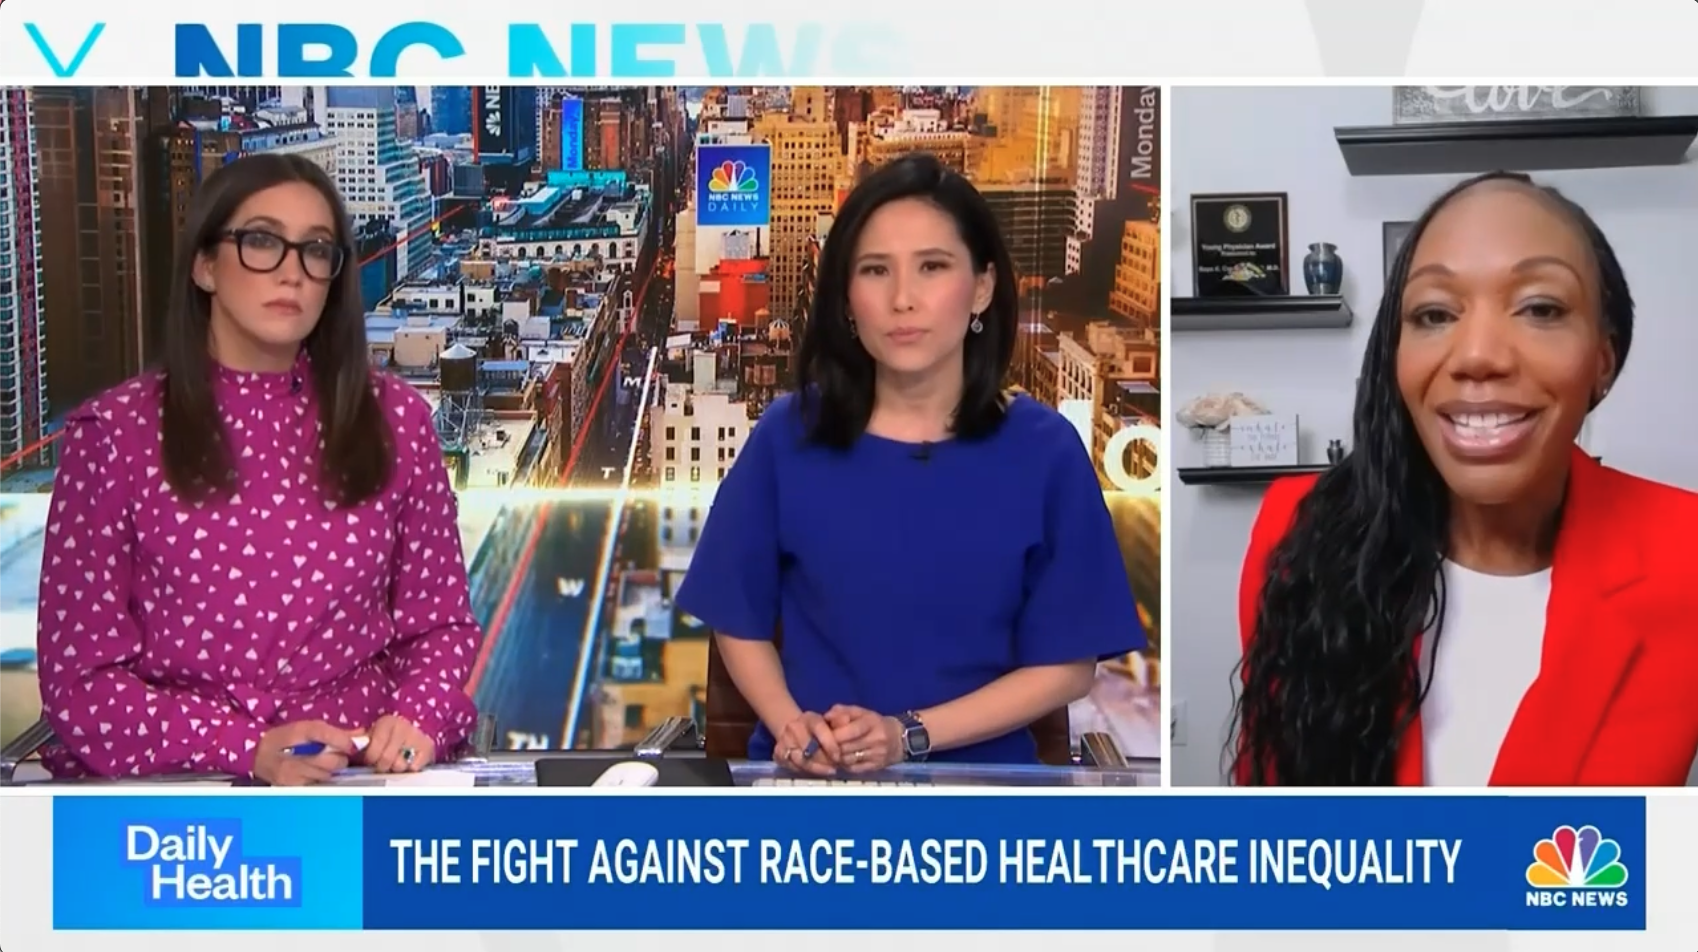 NBC News: Healthcare Inequity